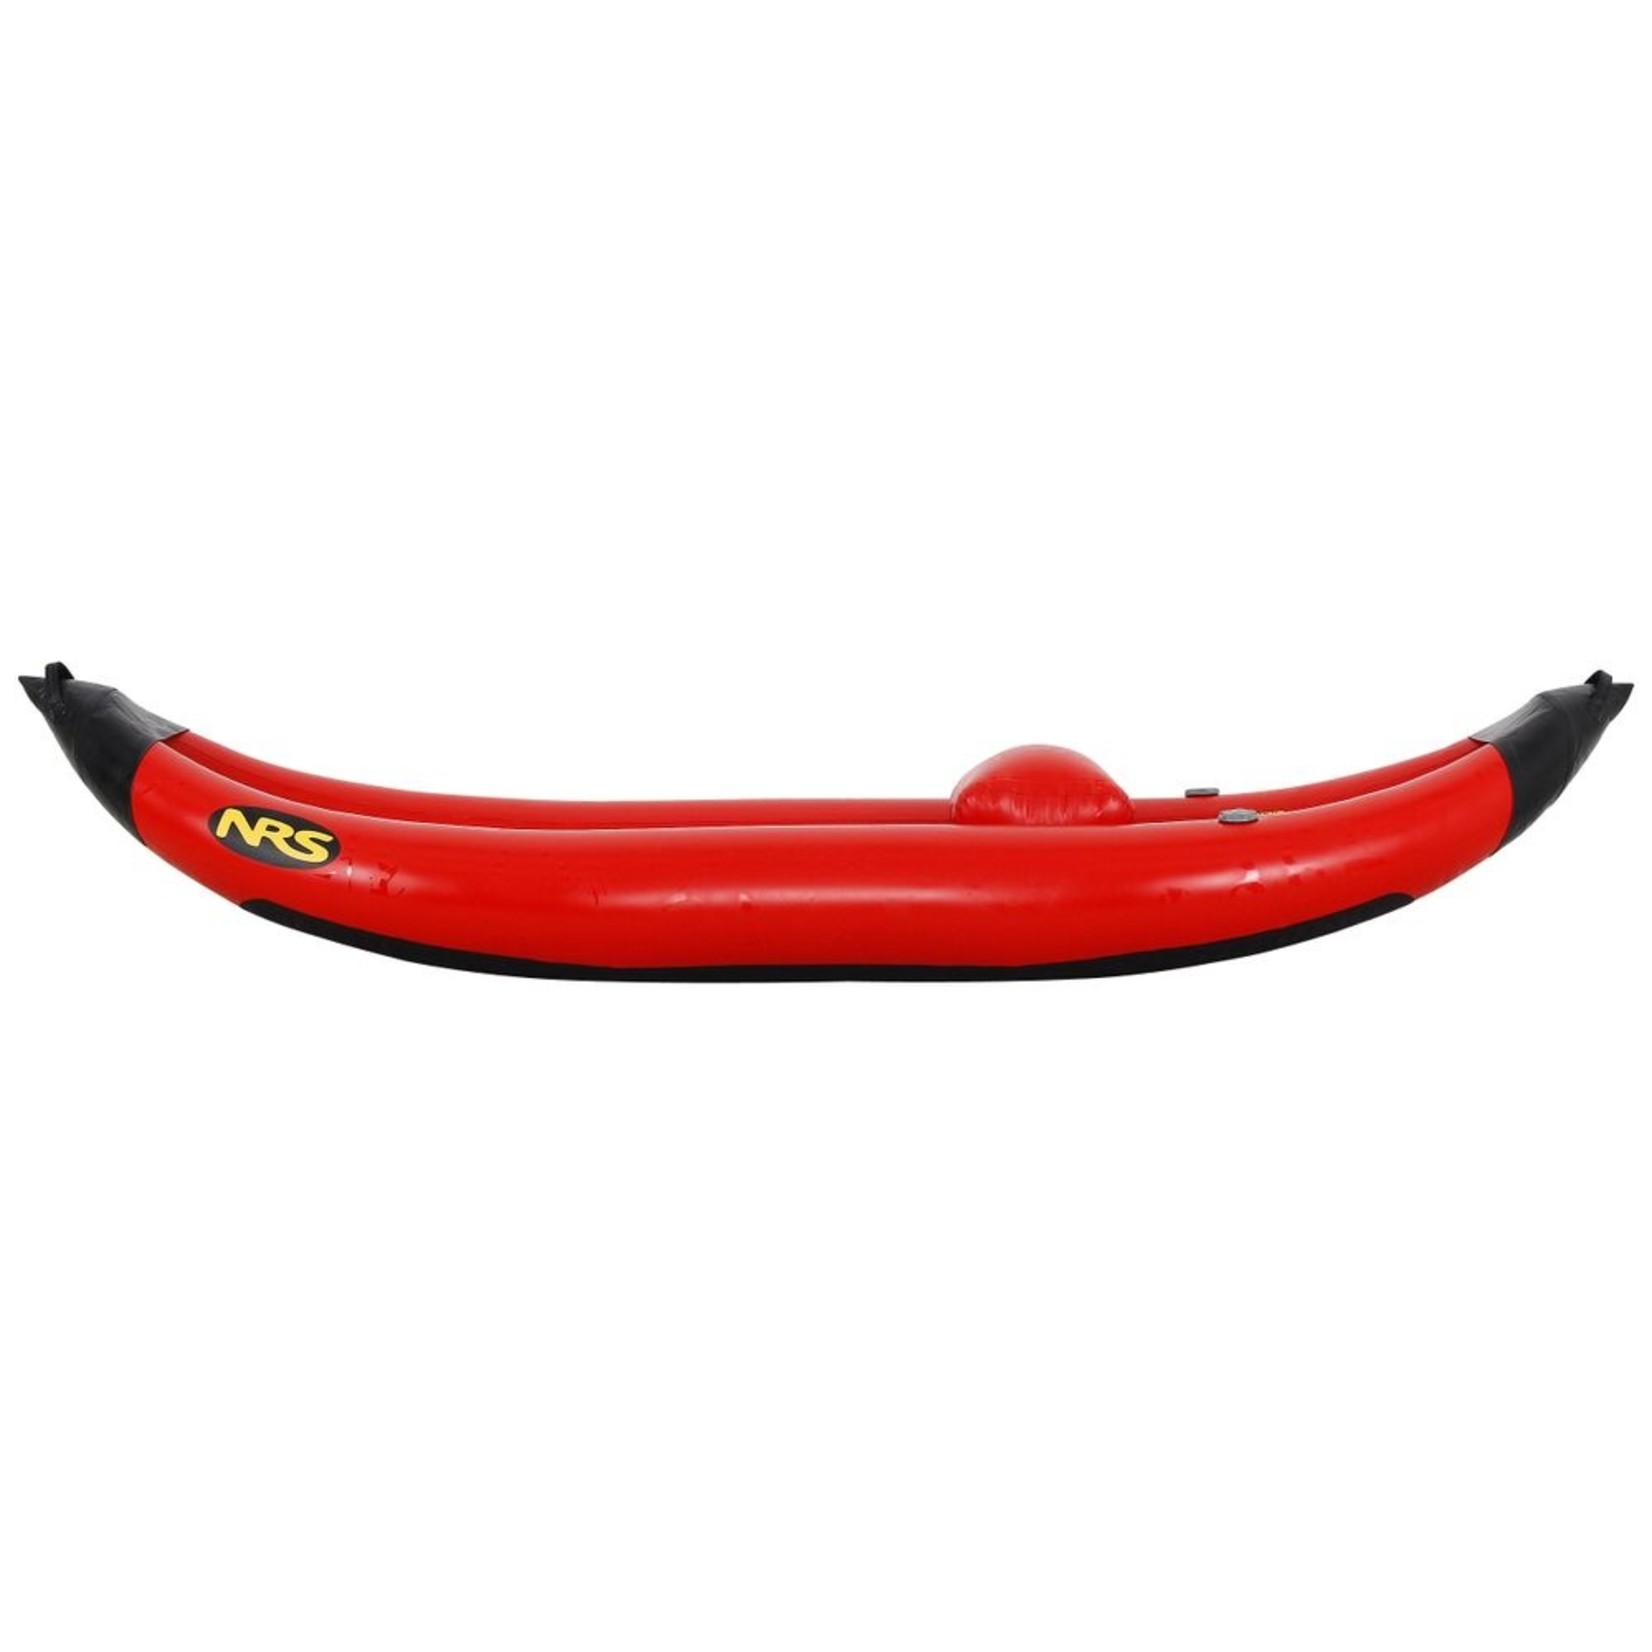 NRS Inflatable Kayak Repair Kit Reviews - NRS, …